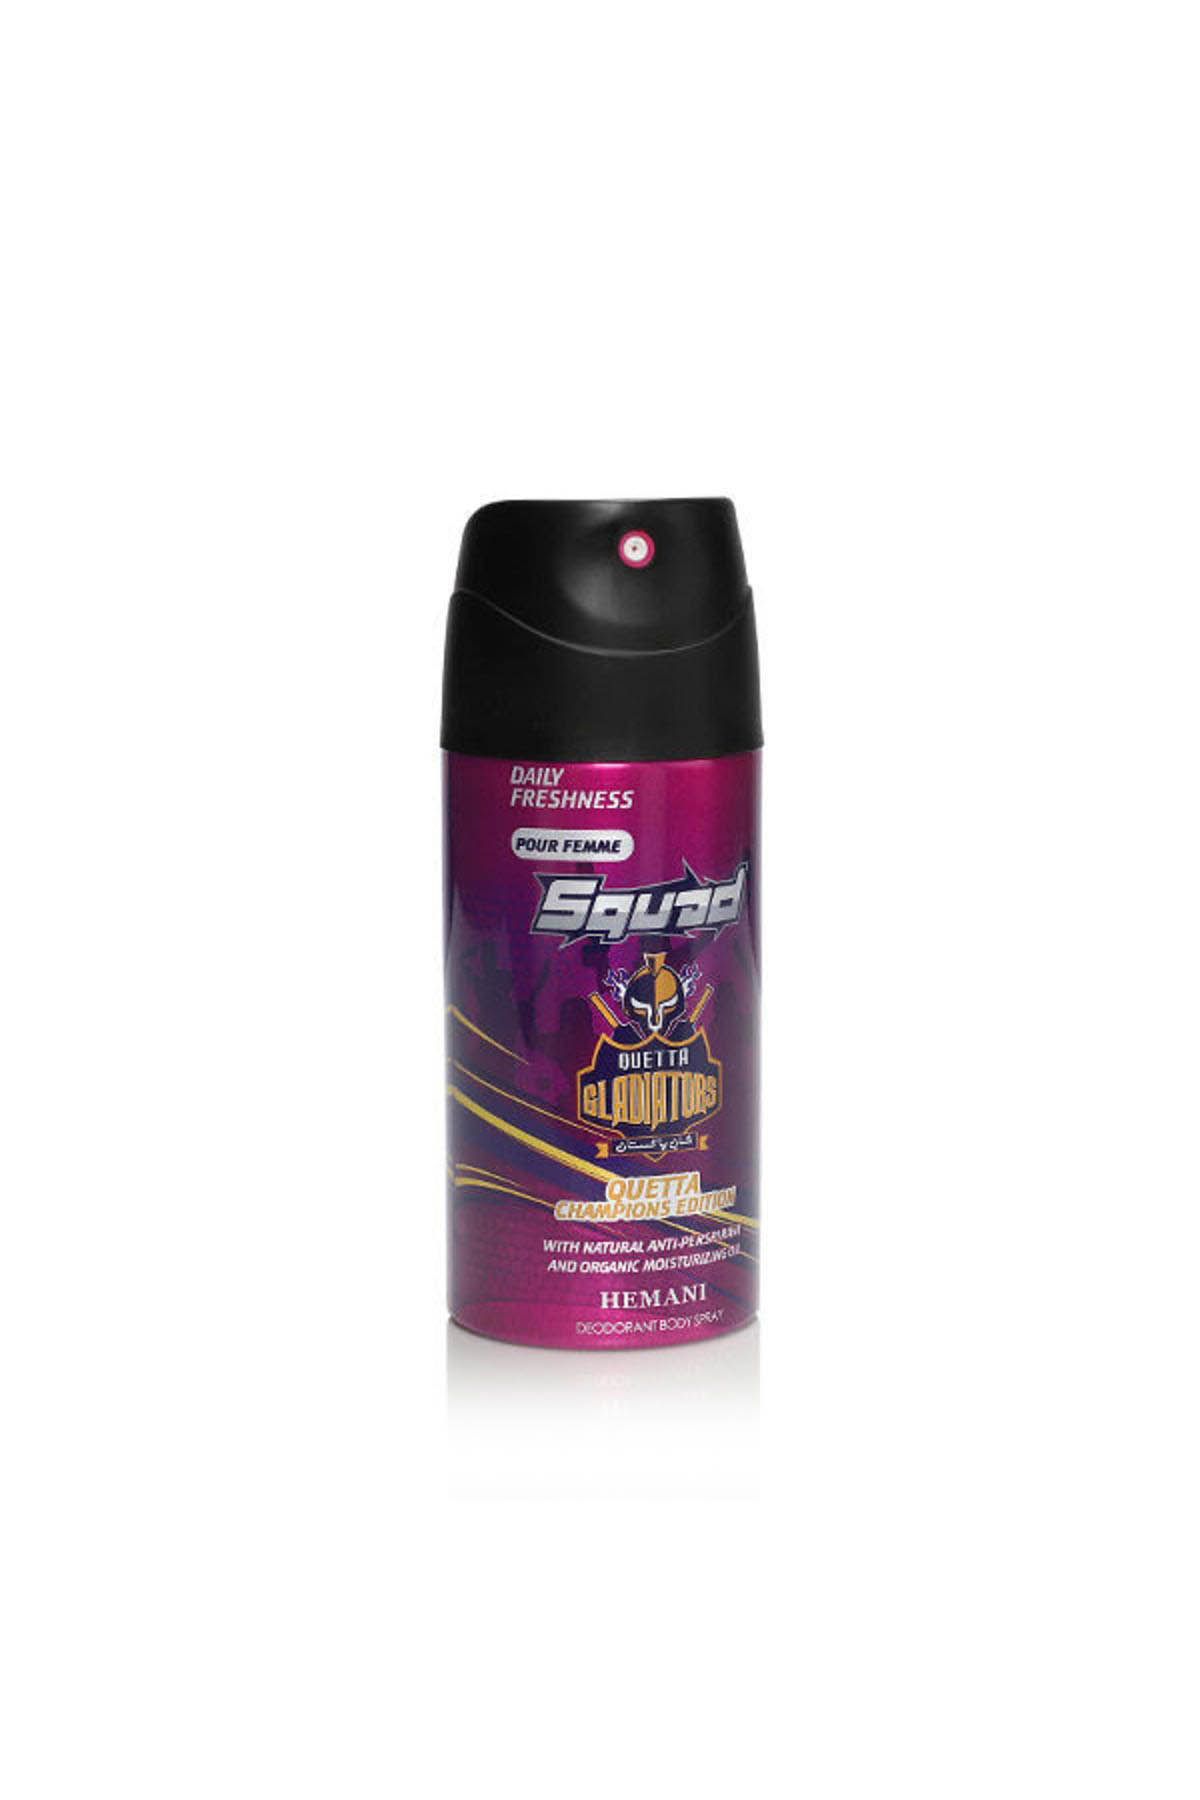 Squad Quetta Champions Edition - Deodorant Body Spray for Women